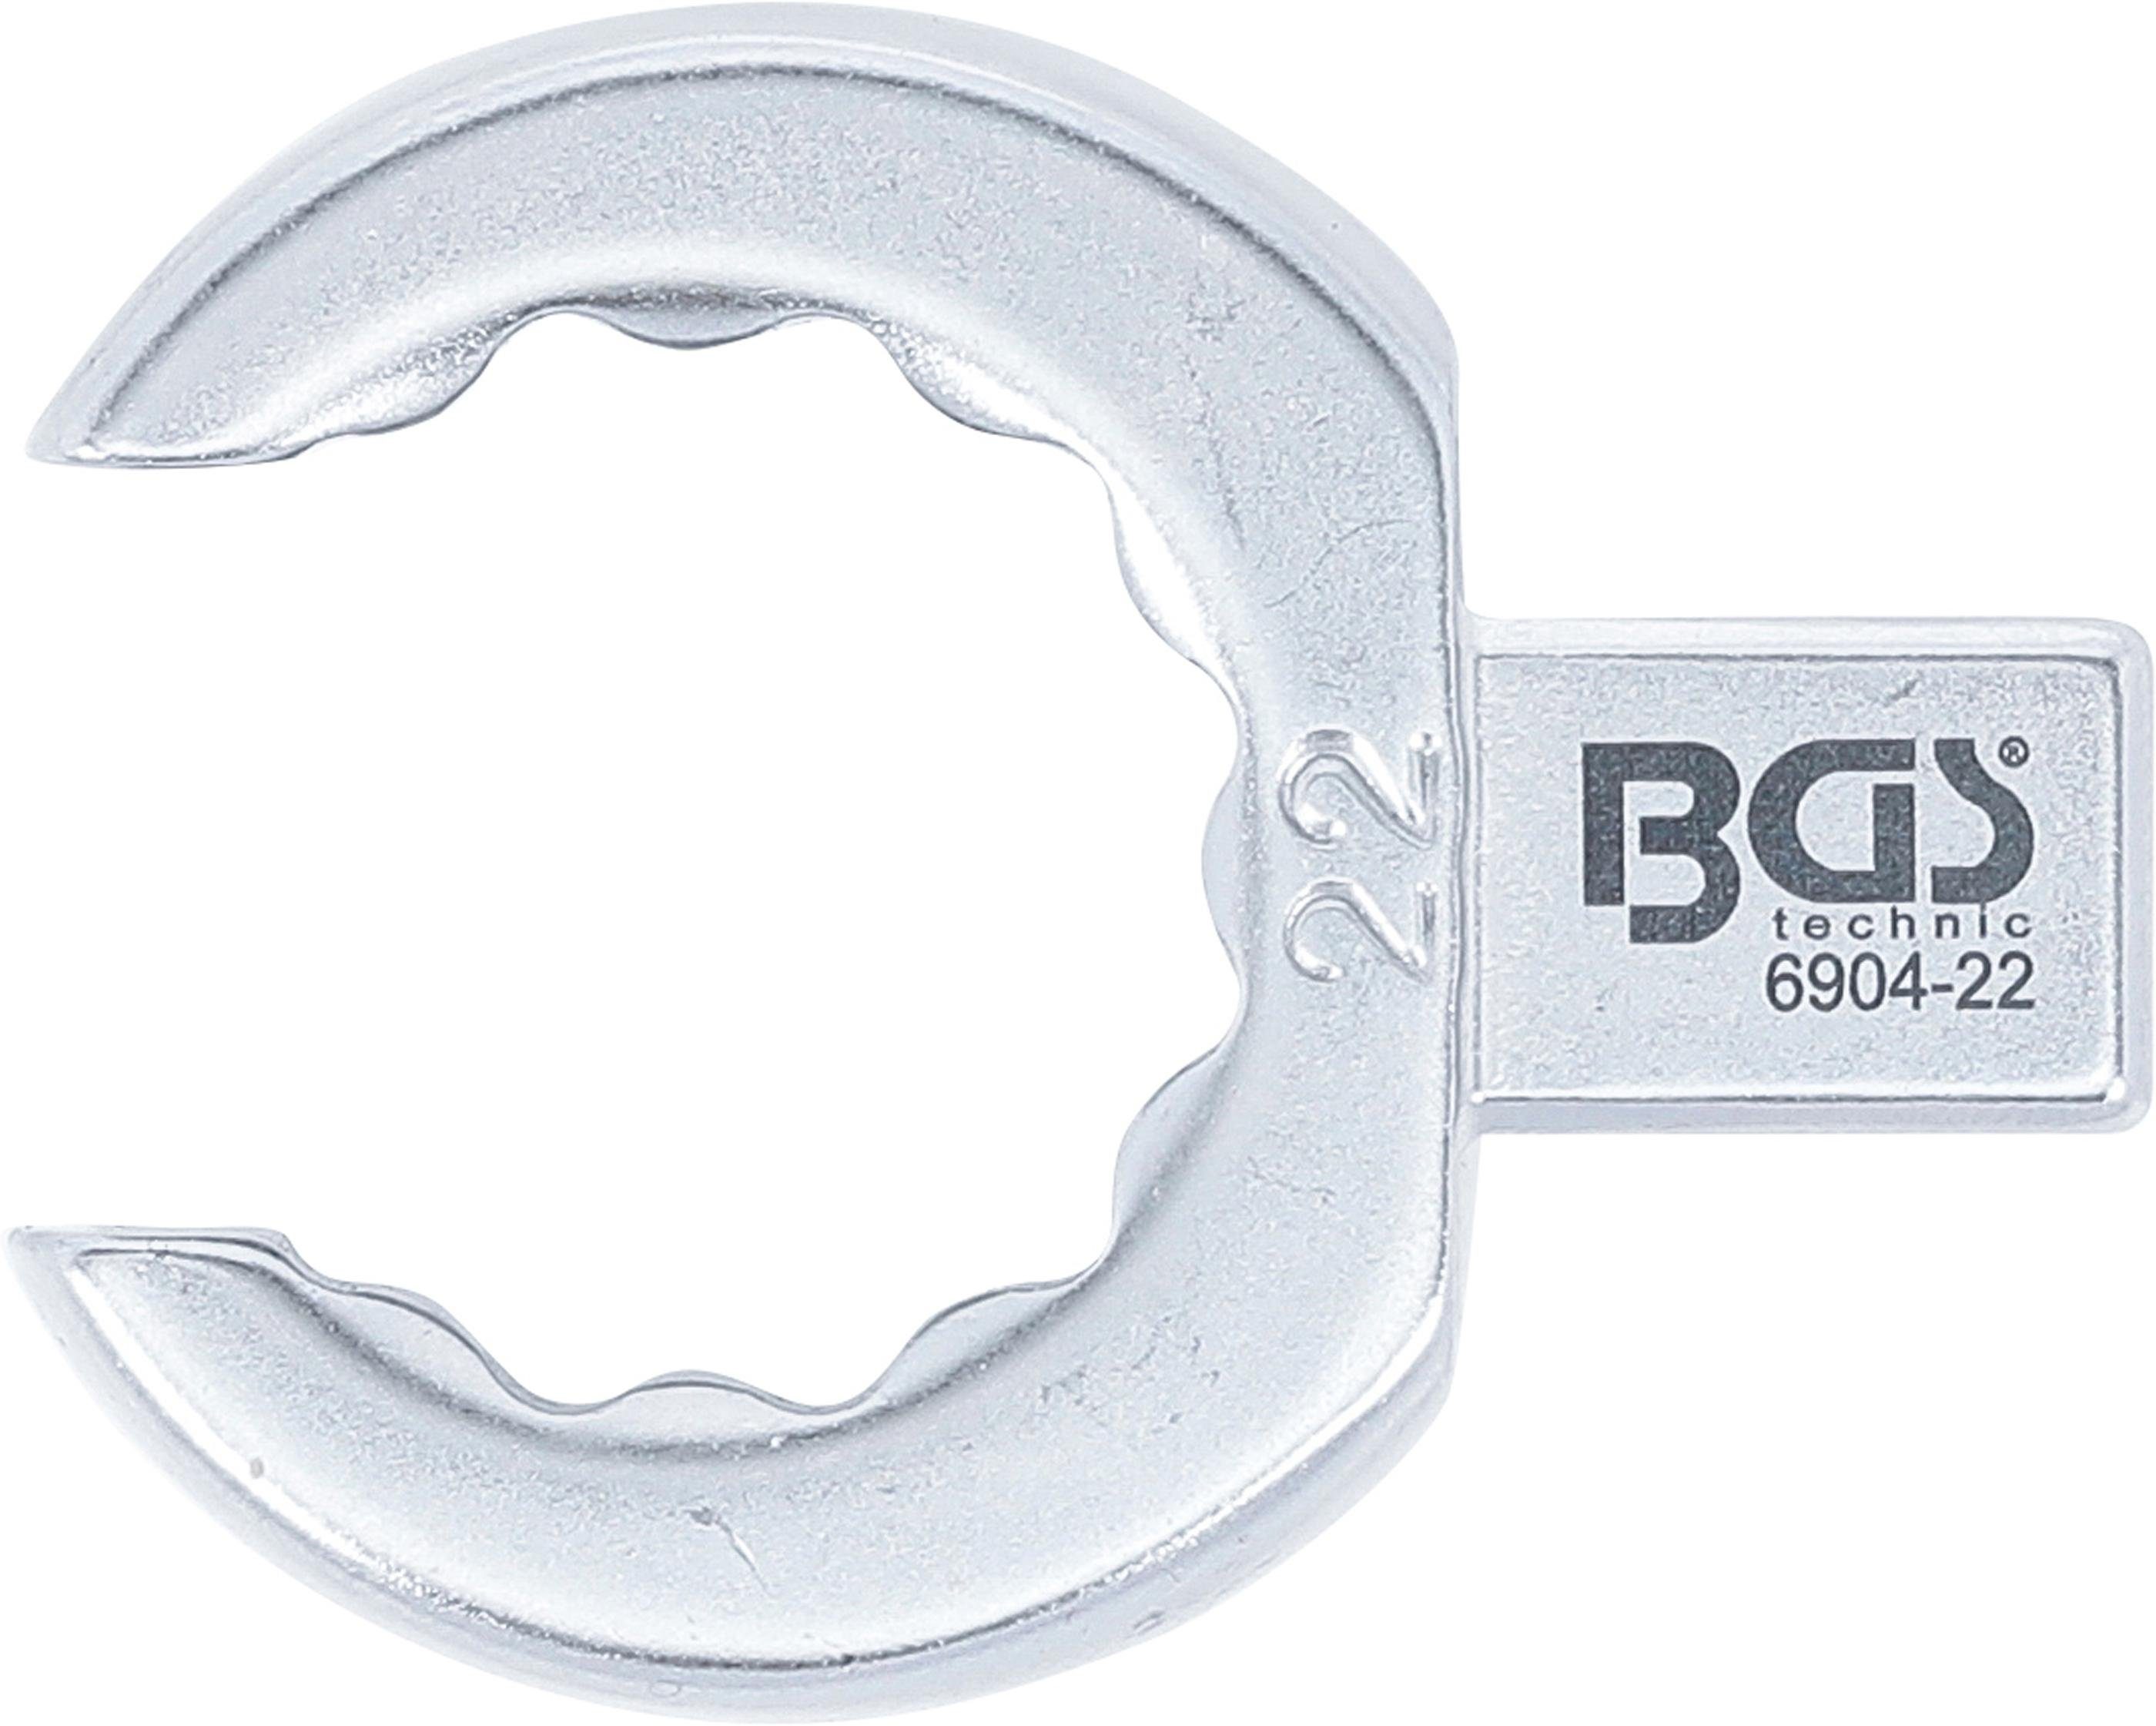 BGS technic Ausstechform Einsteck-Ringschlüssel, offen, 22 12 9 mm Aufnahme mm, x